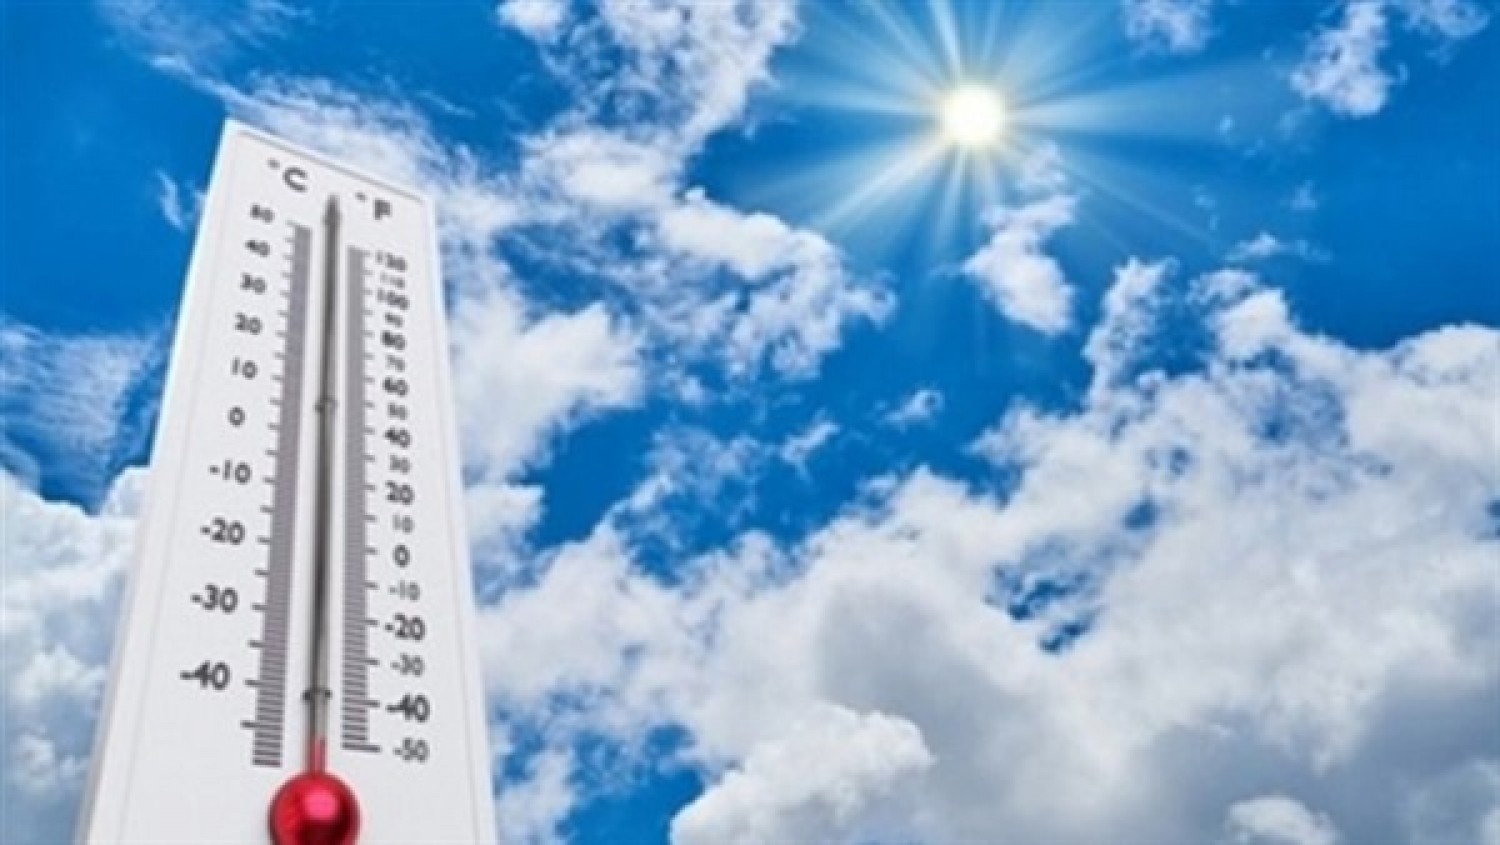 درجات الحرارة اليوم الجمعة 8-5-2020 فى مصر - جريدة المال